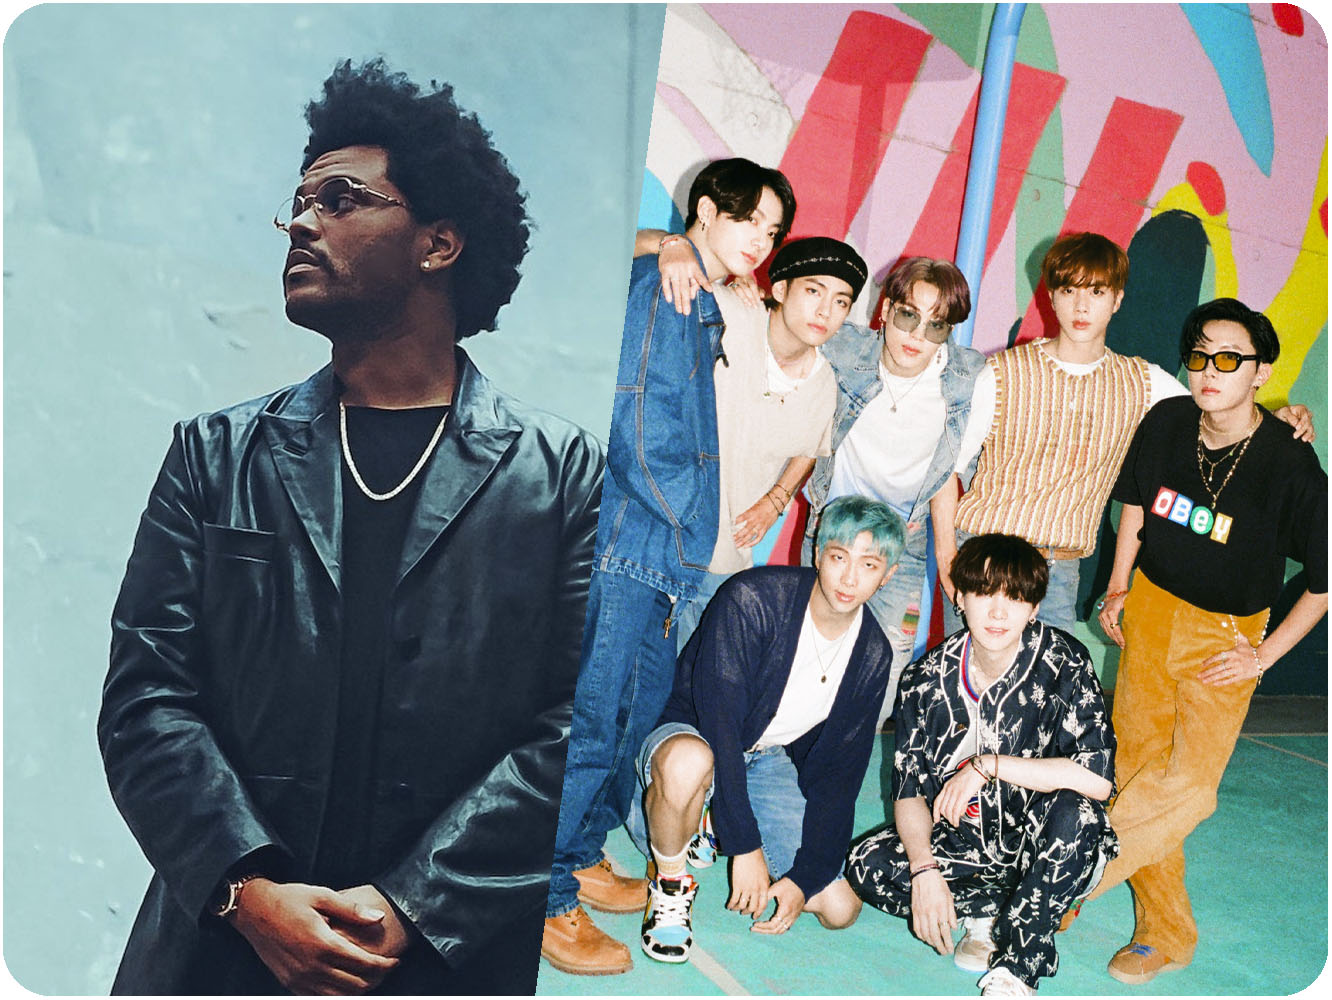  IFPI deja ‘Blinding Lights’ como single más popular de 2020, pero The Weeknd no puede con BTS en álbumes